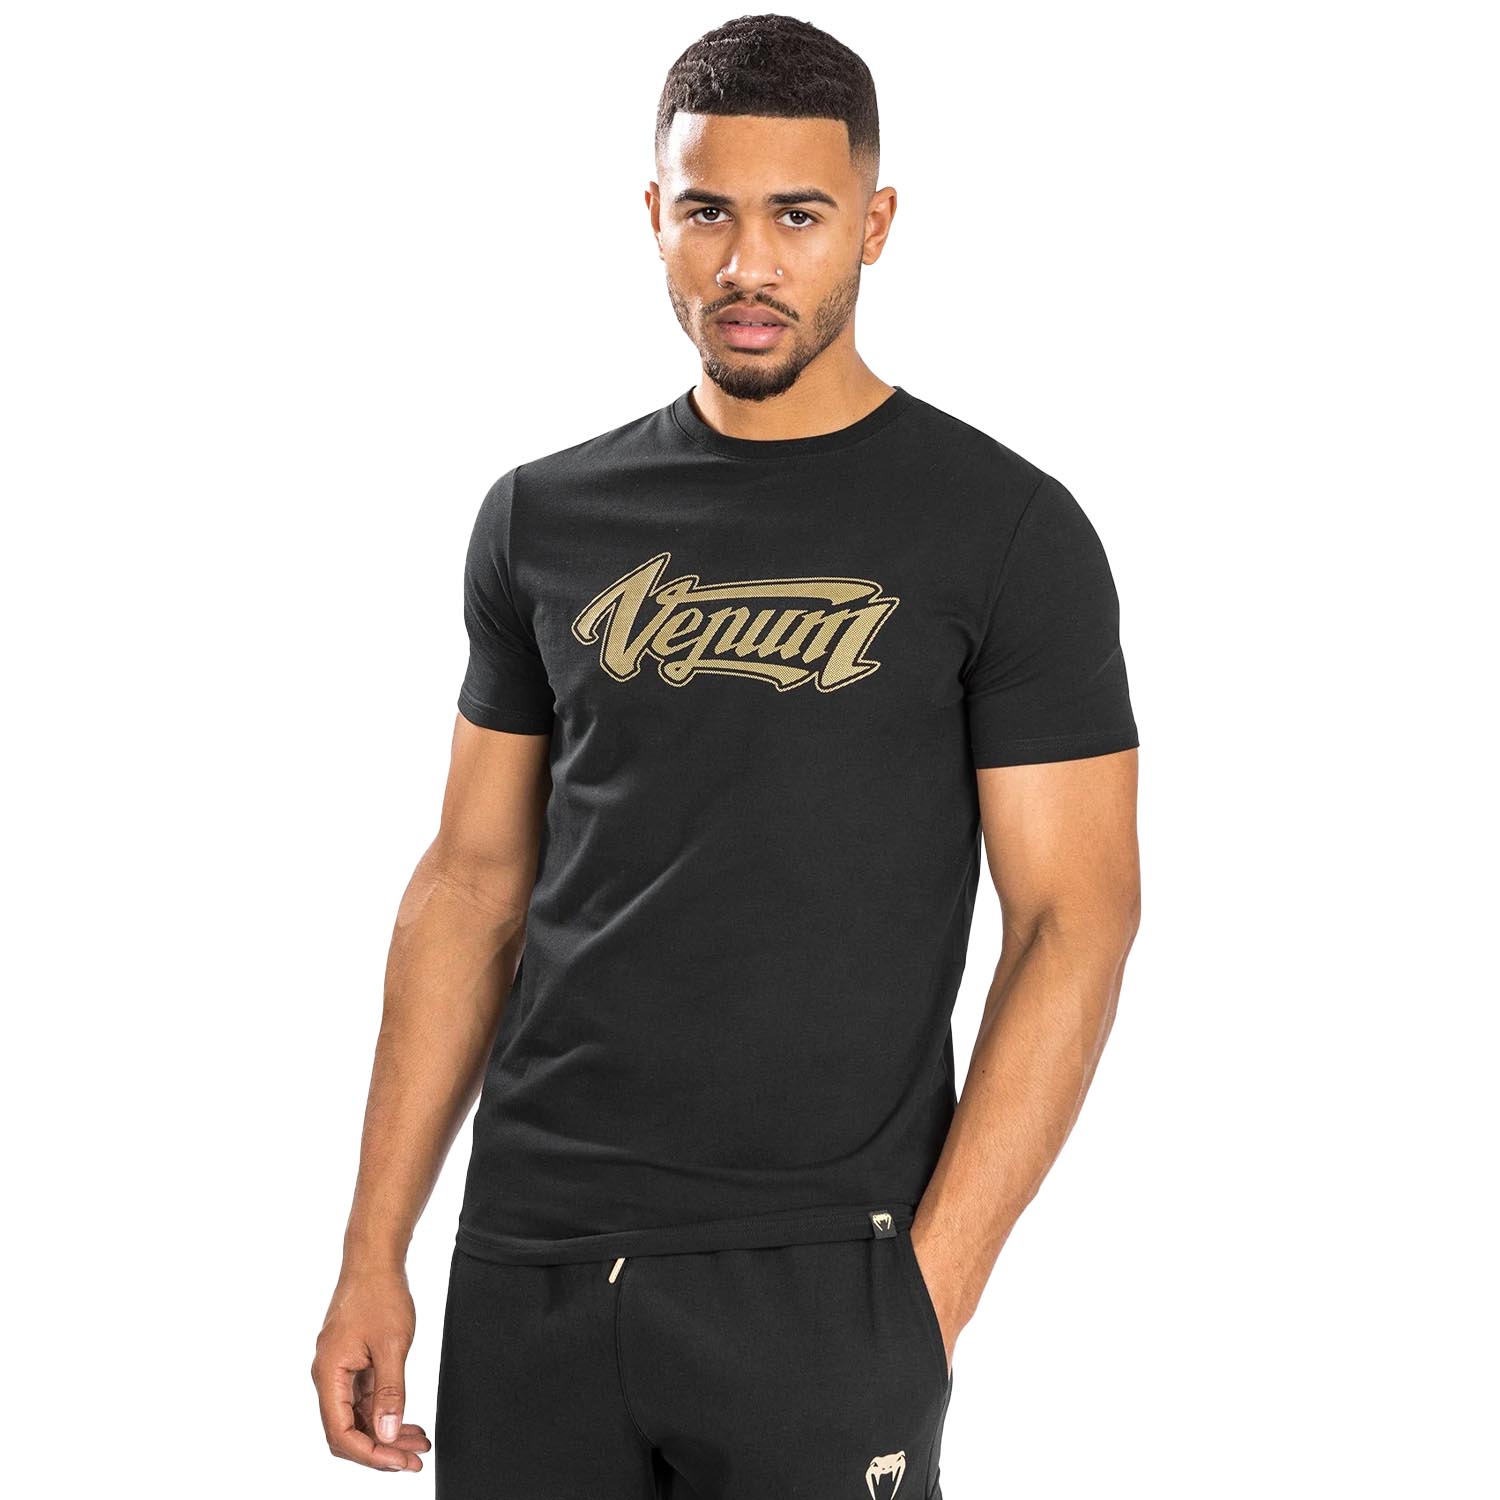 VENUM T-Shirt, Absolute 2.0, schwarz-gold, M